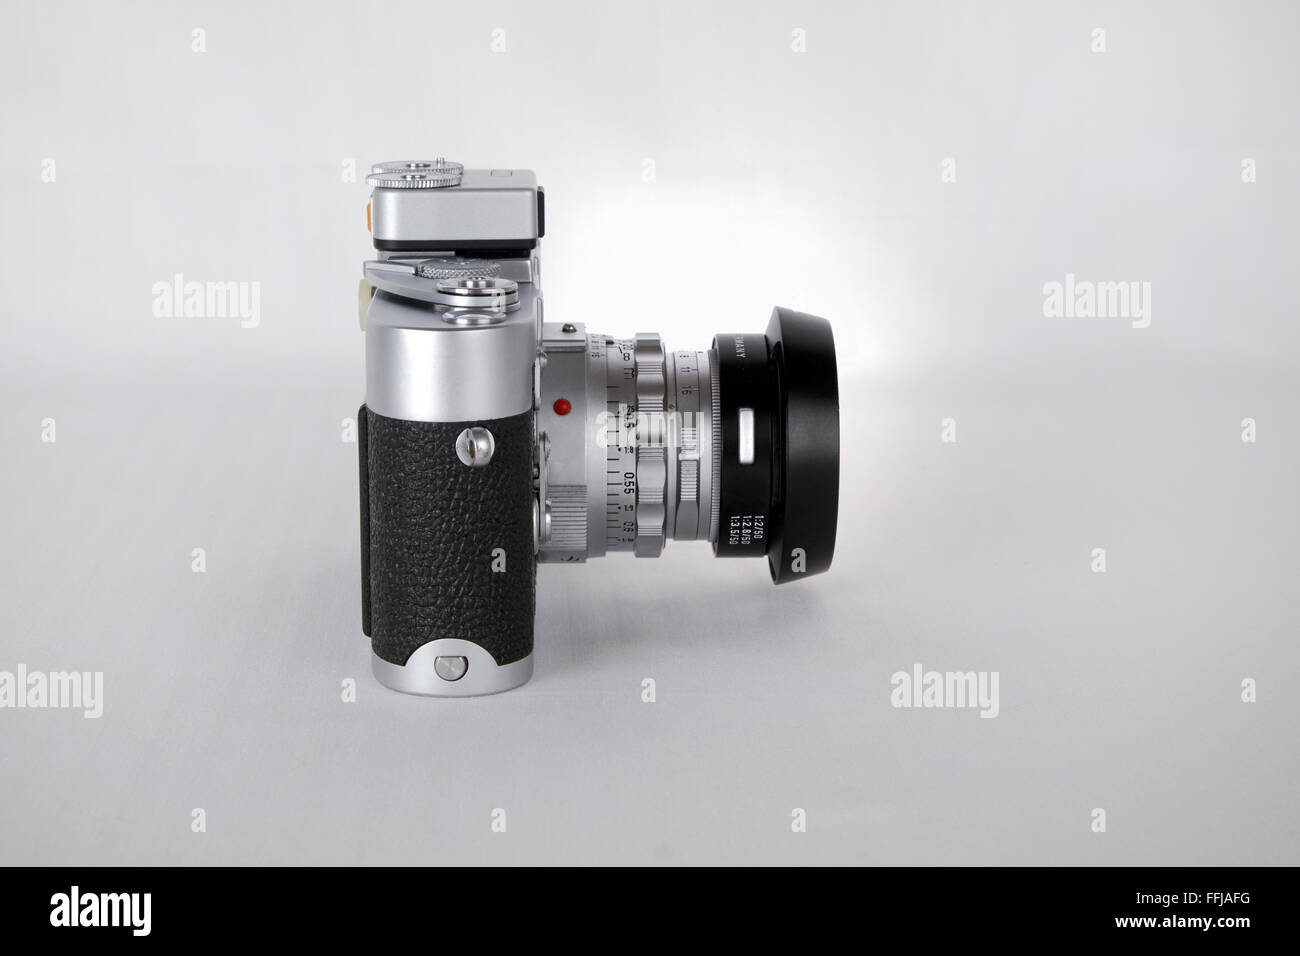 Cámara de película clásica Leica M3 sobre fondo blanco. Foto de stock